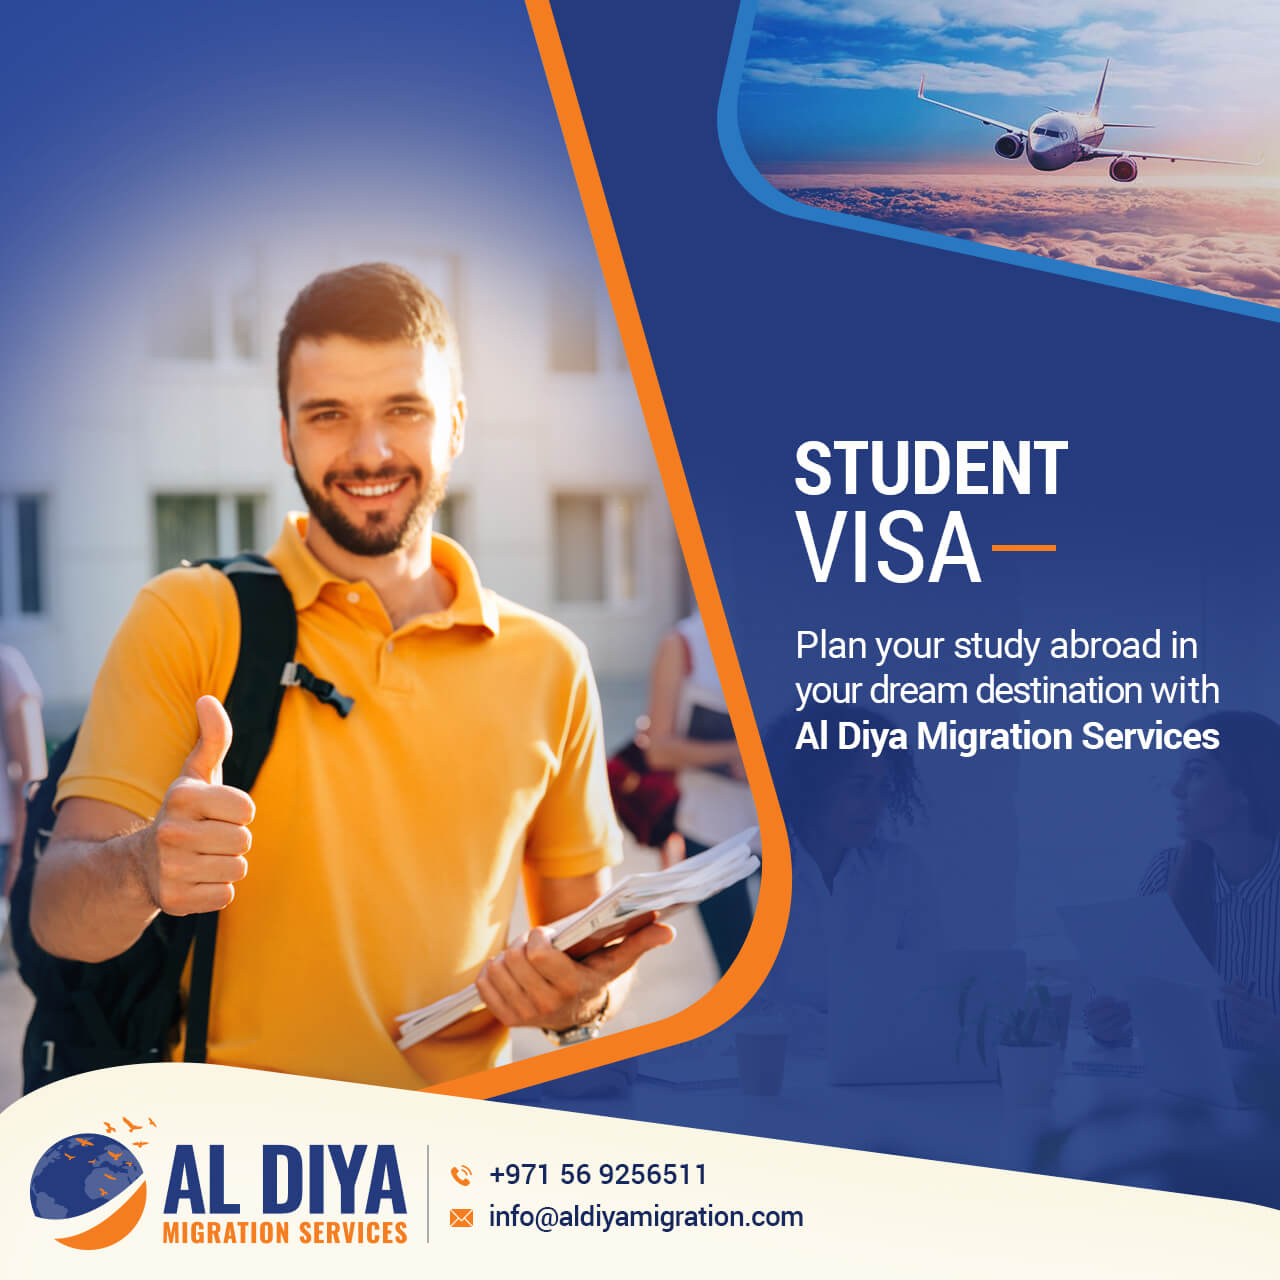 Al Diya Migration Services